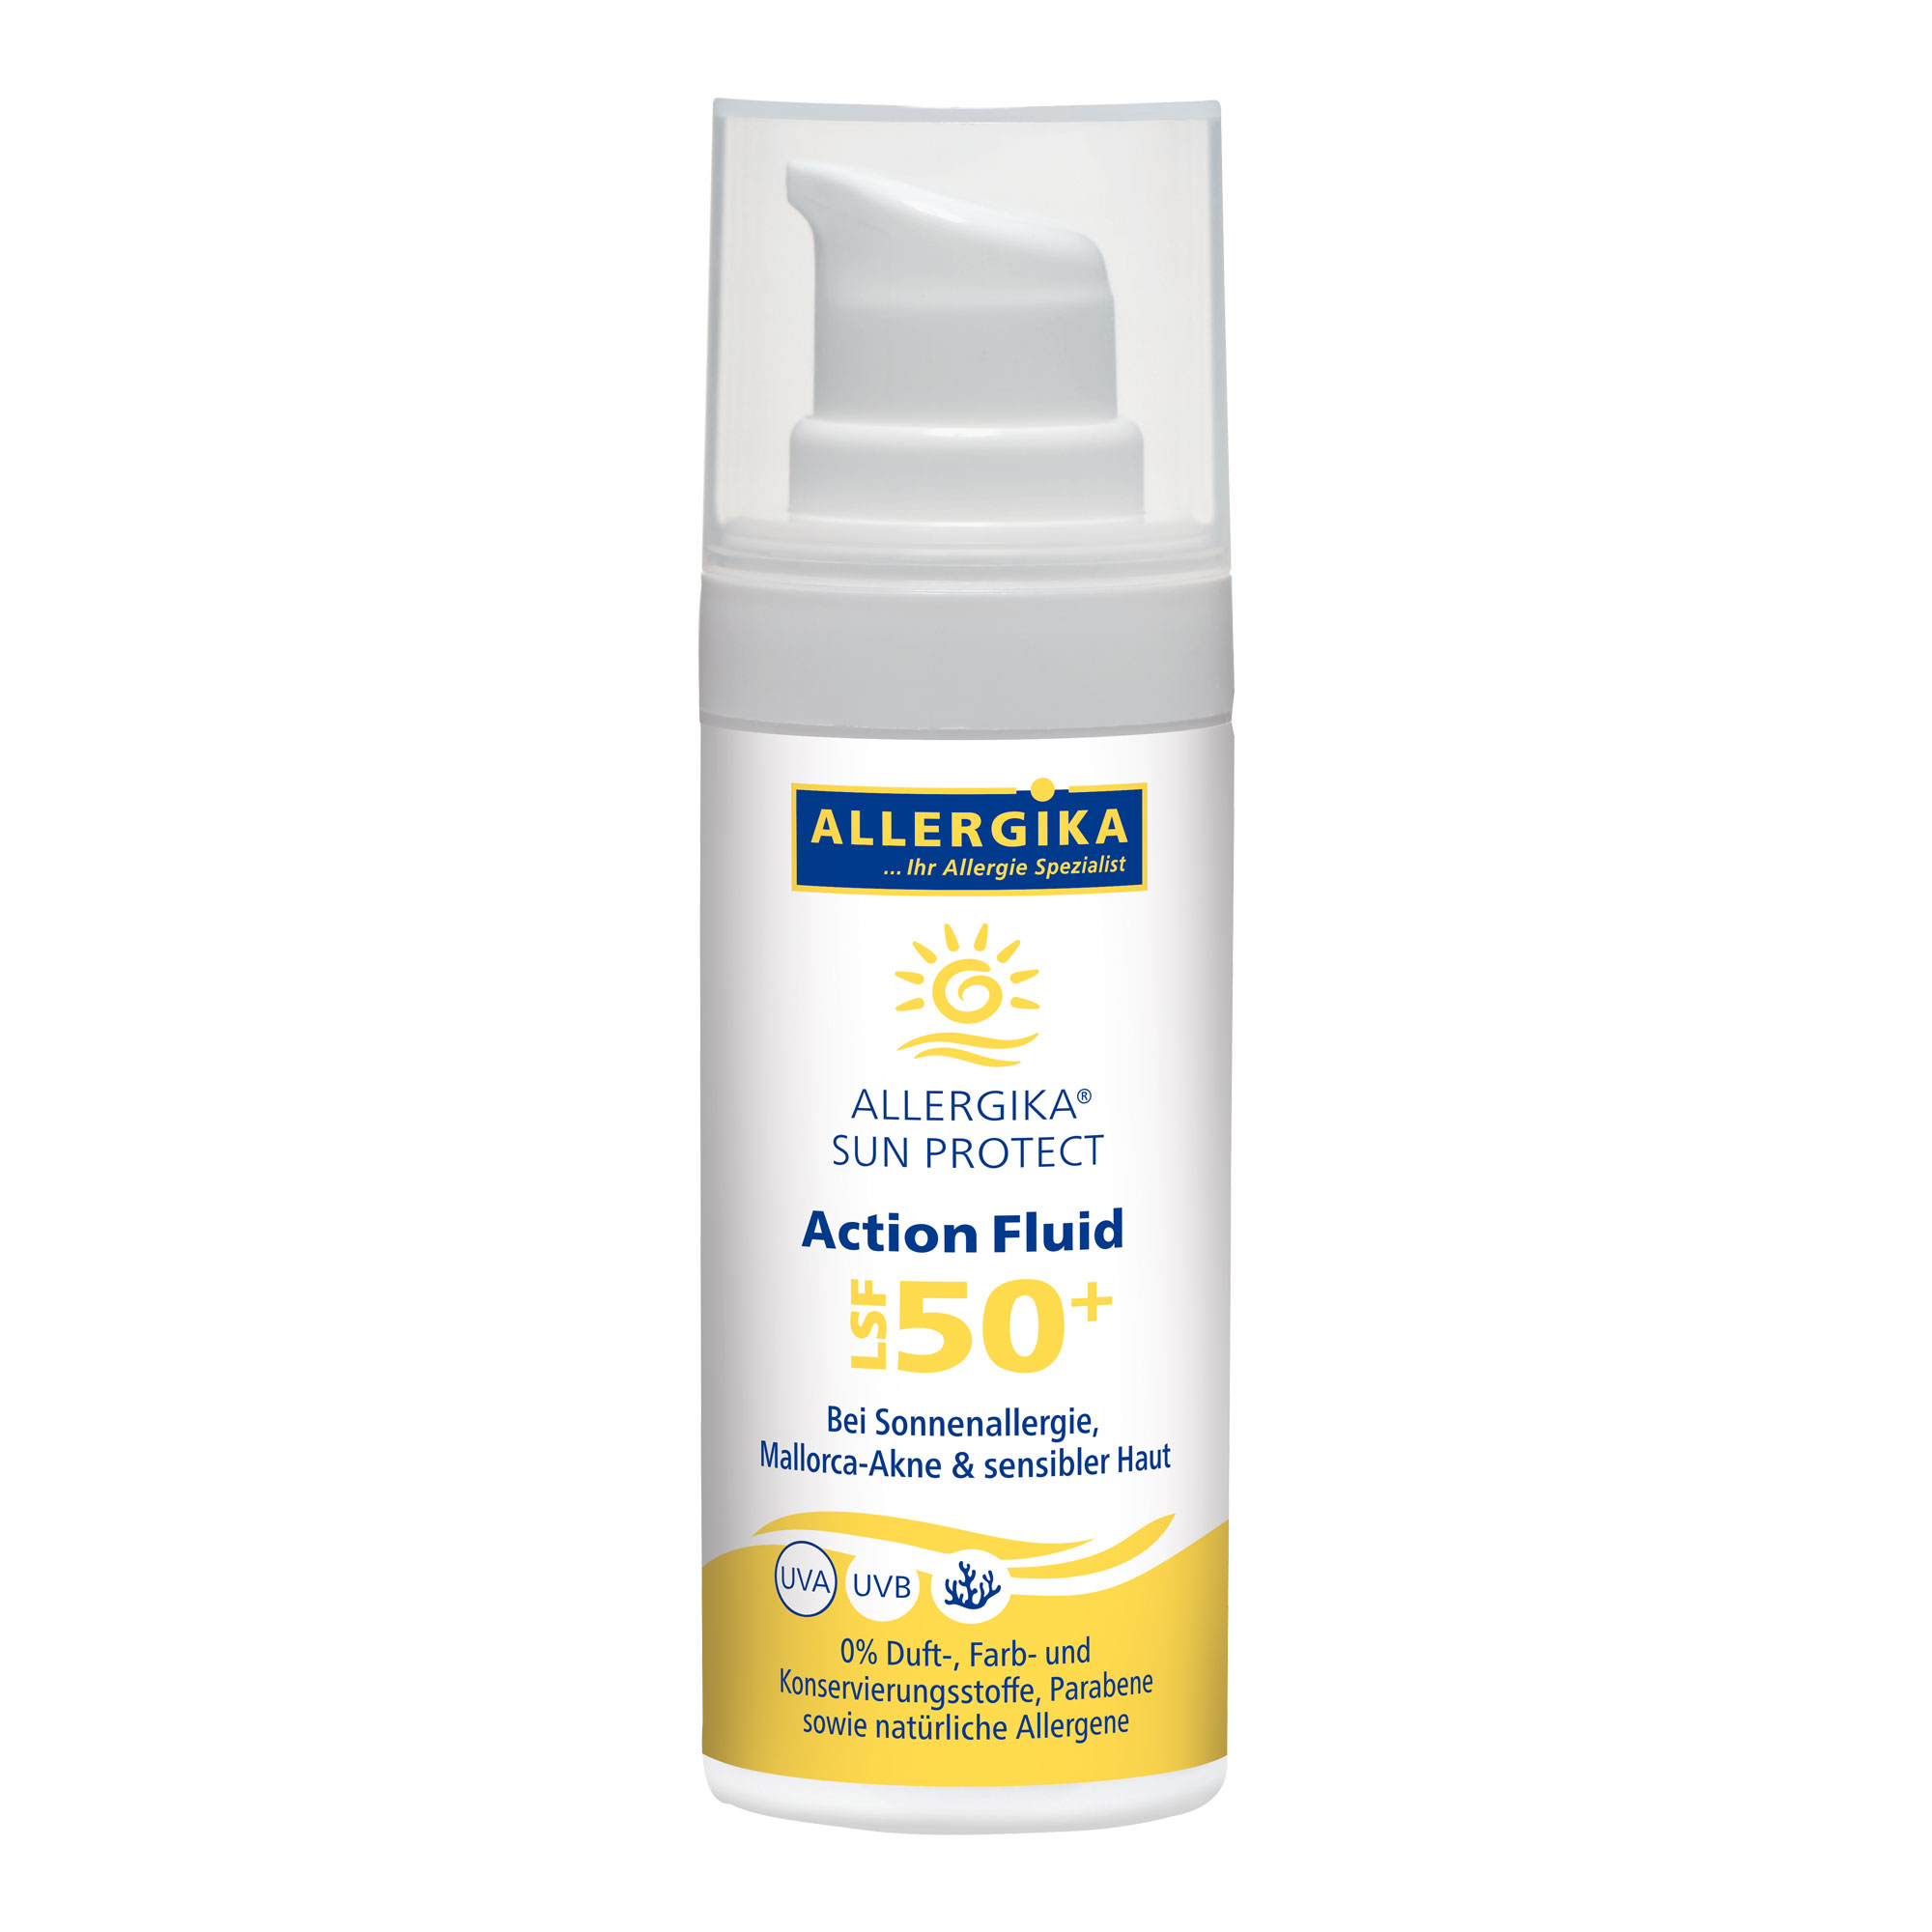 Sonnenfluid mit LSF50+. Zur Anwendung bei Sonnenallergie, Mallorca-Akne und sensibler Haut.